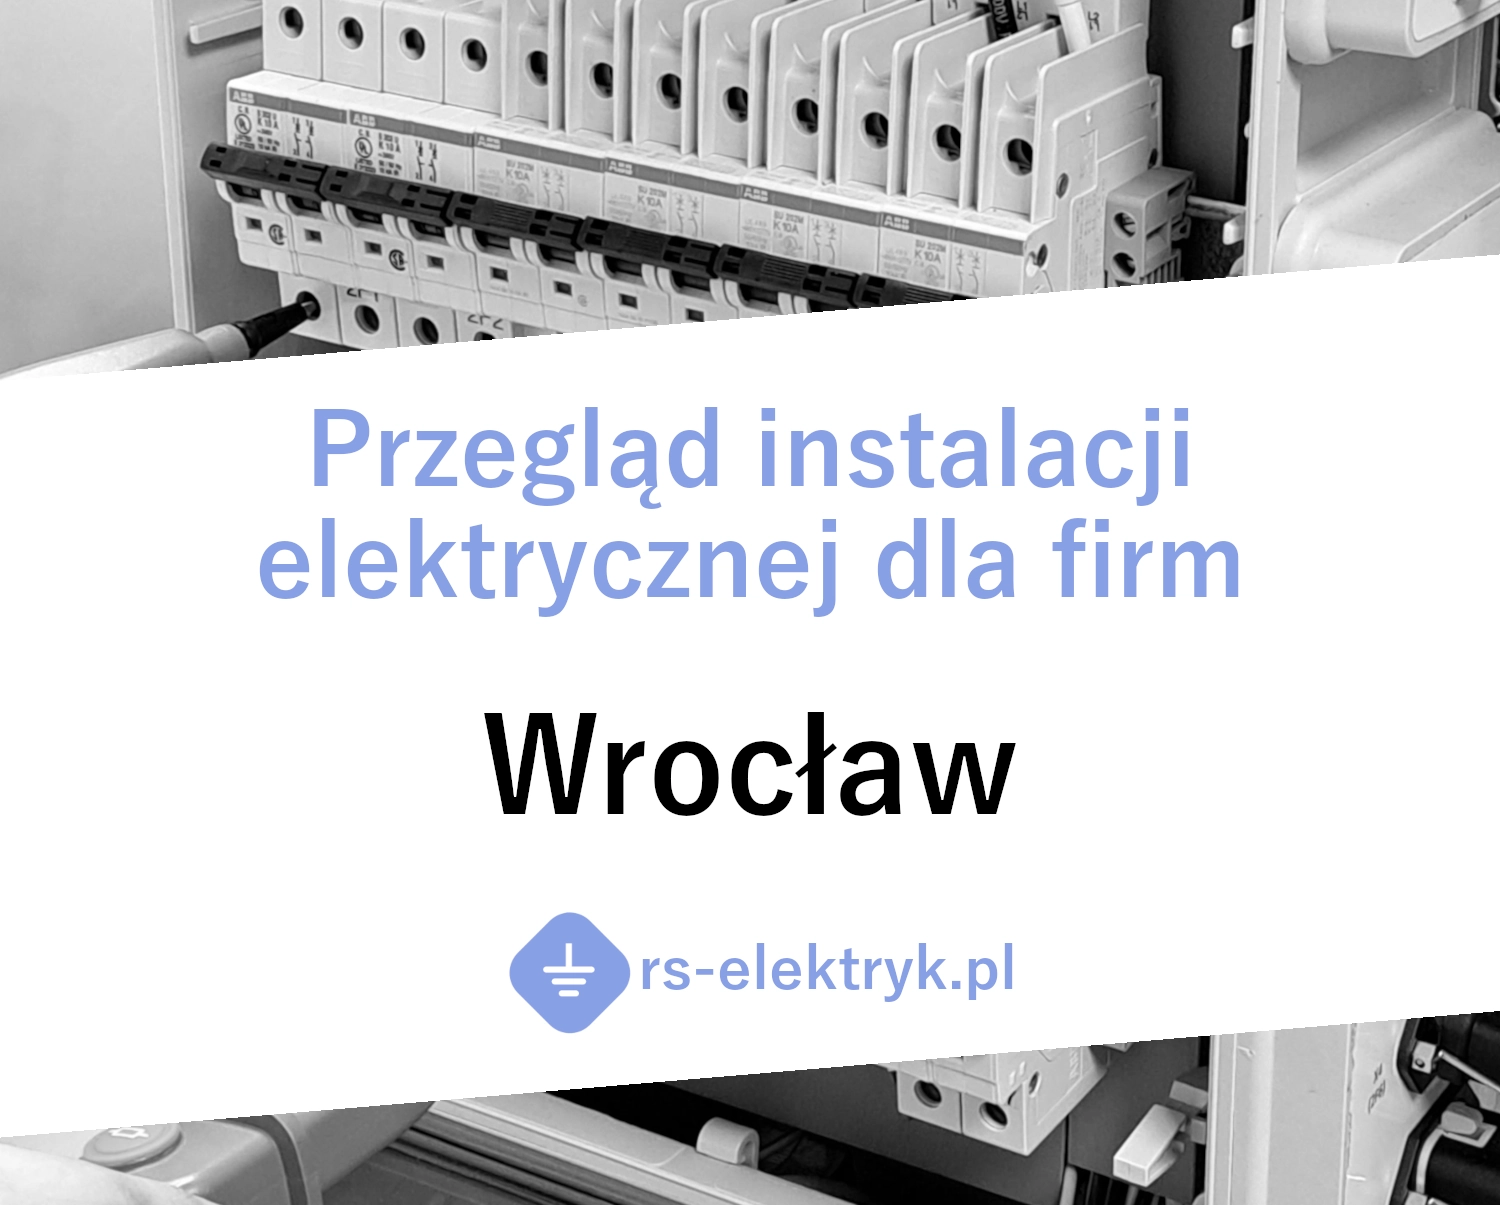 Przegląd instalacji elektrycznej dla firm (Wrocław)